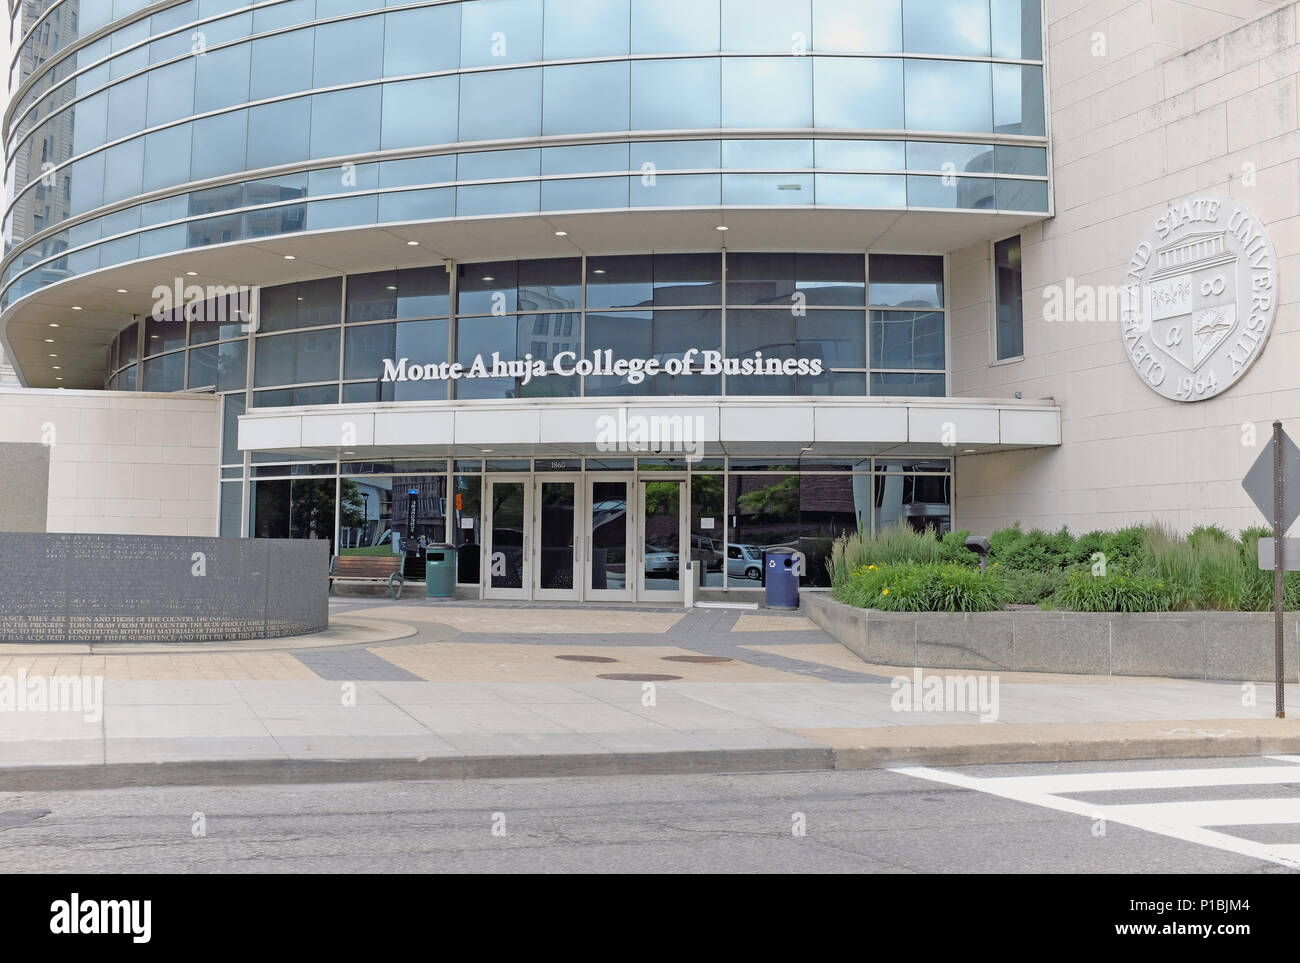 Le Monte Ahuja College of Business immeuble sur Campus de l'Université d'État de Cleveland à Cleveland, Ohio, USA. Banque D'Images